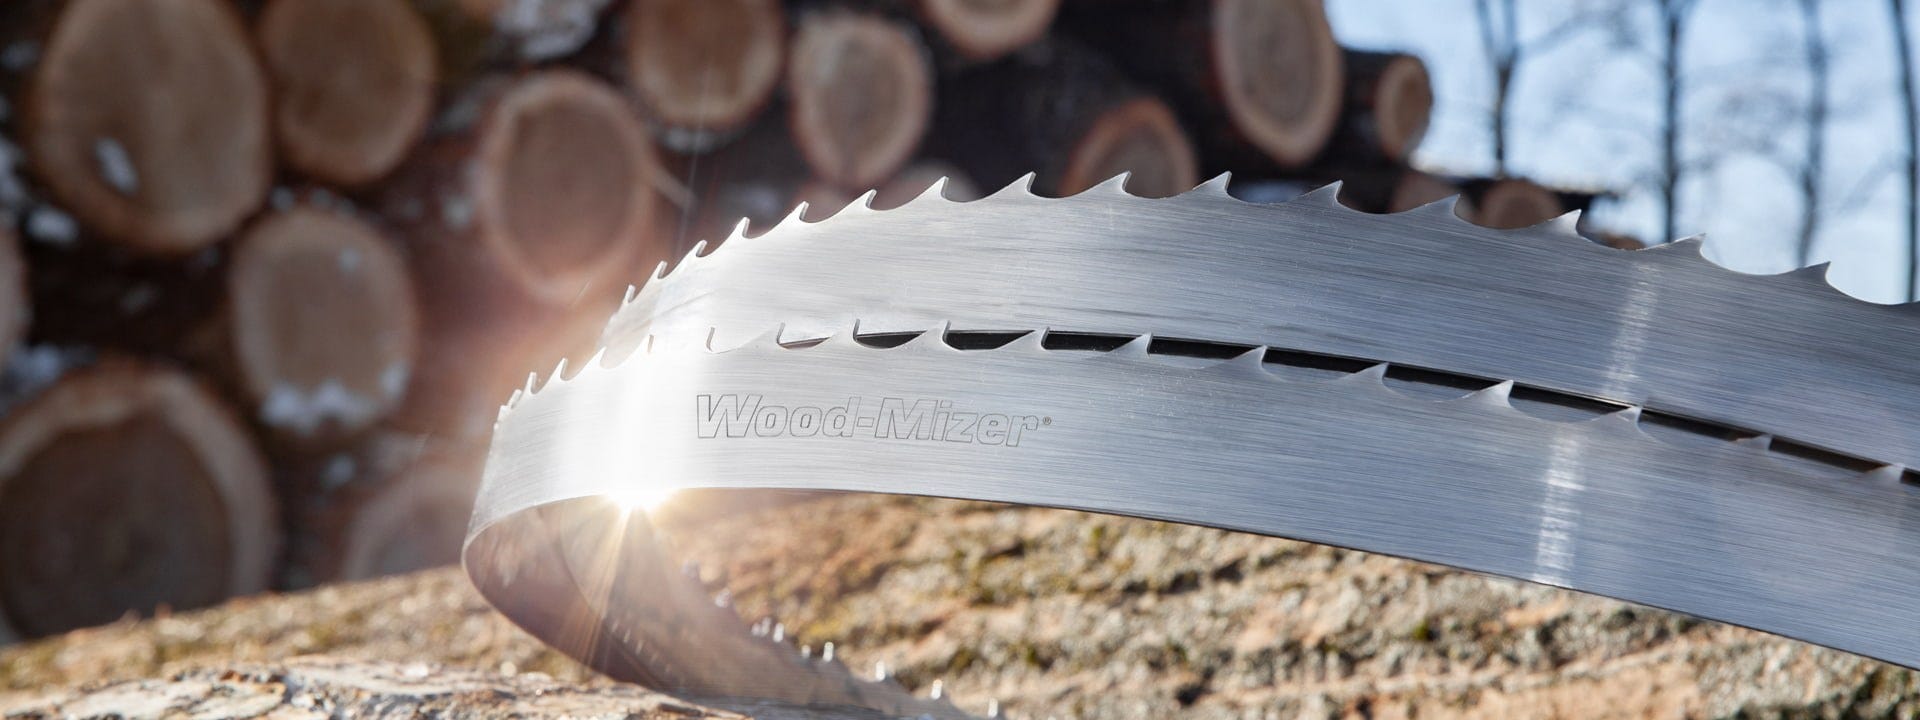 Wood-Mizer blades